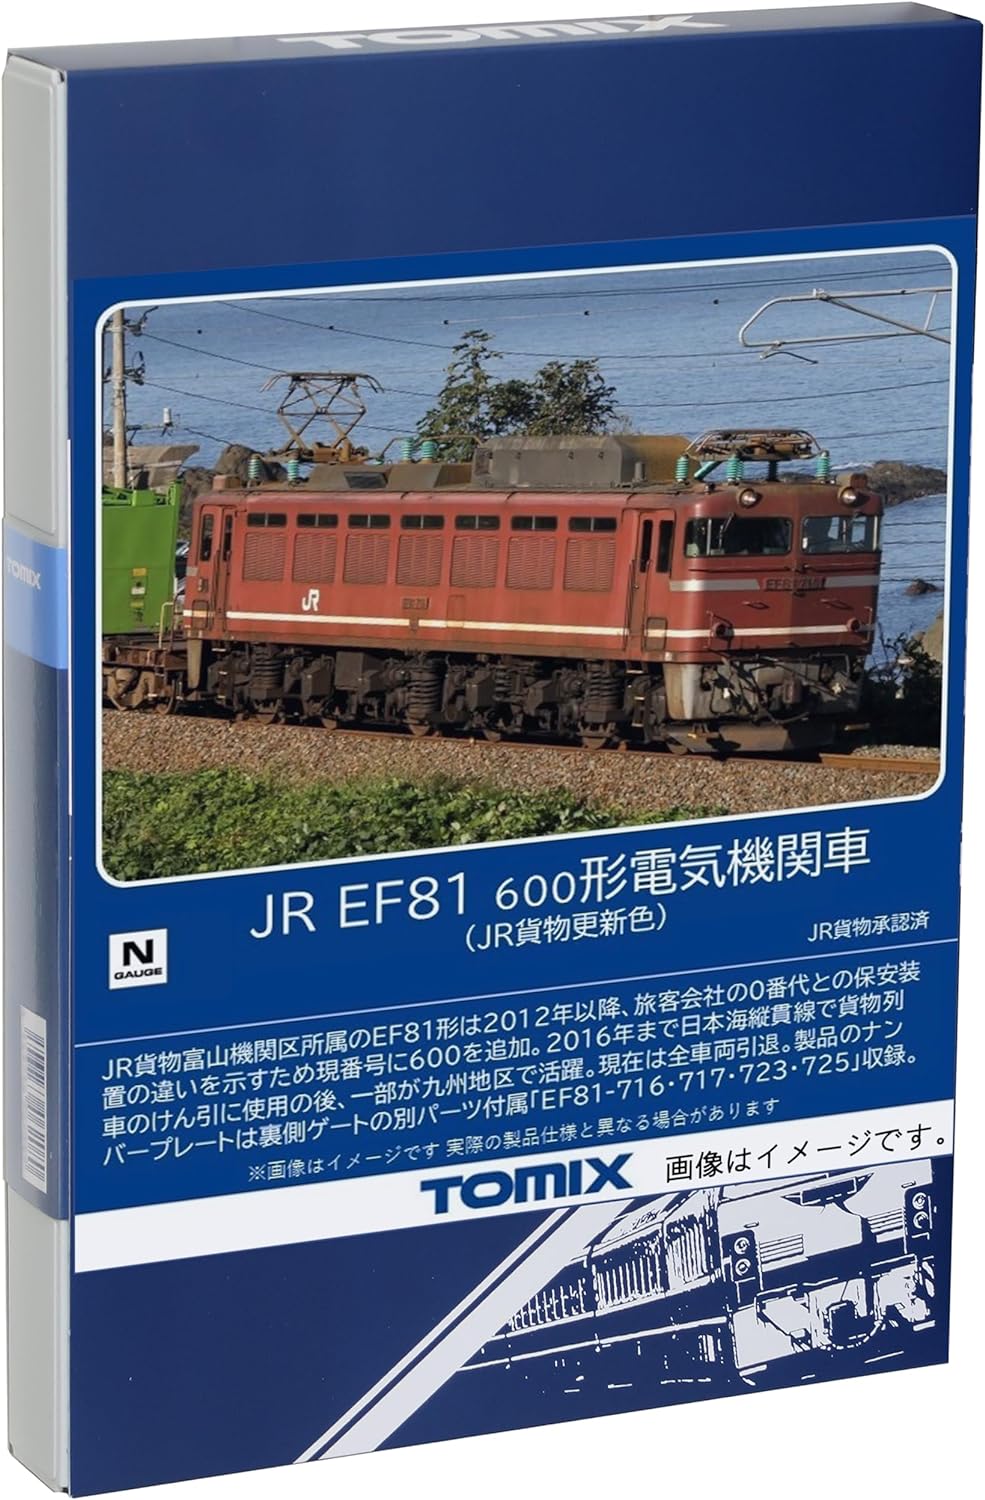 TOMIX 7180 N Gauge JR EF81 600 型JR Cargo 更新颜色铁路模型电力机车 